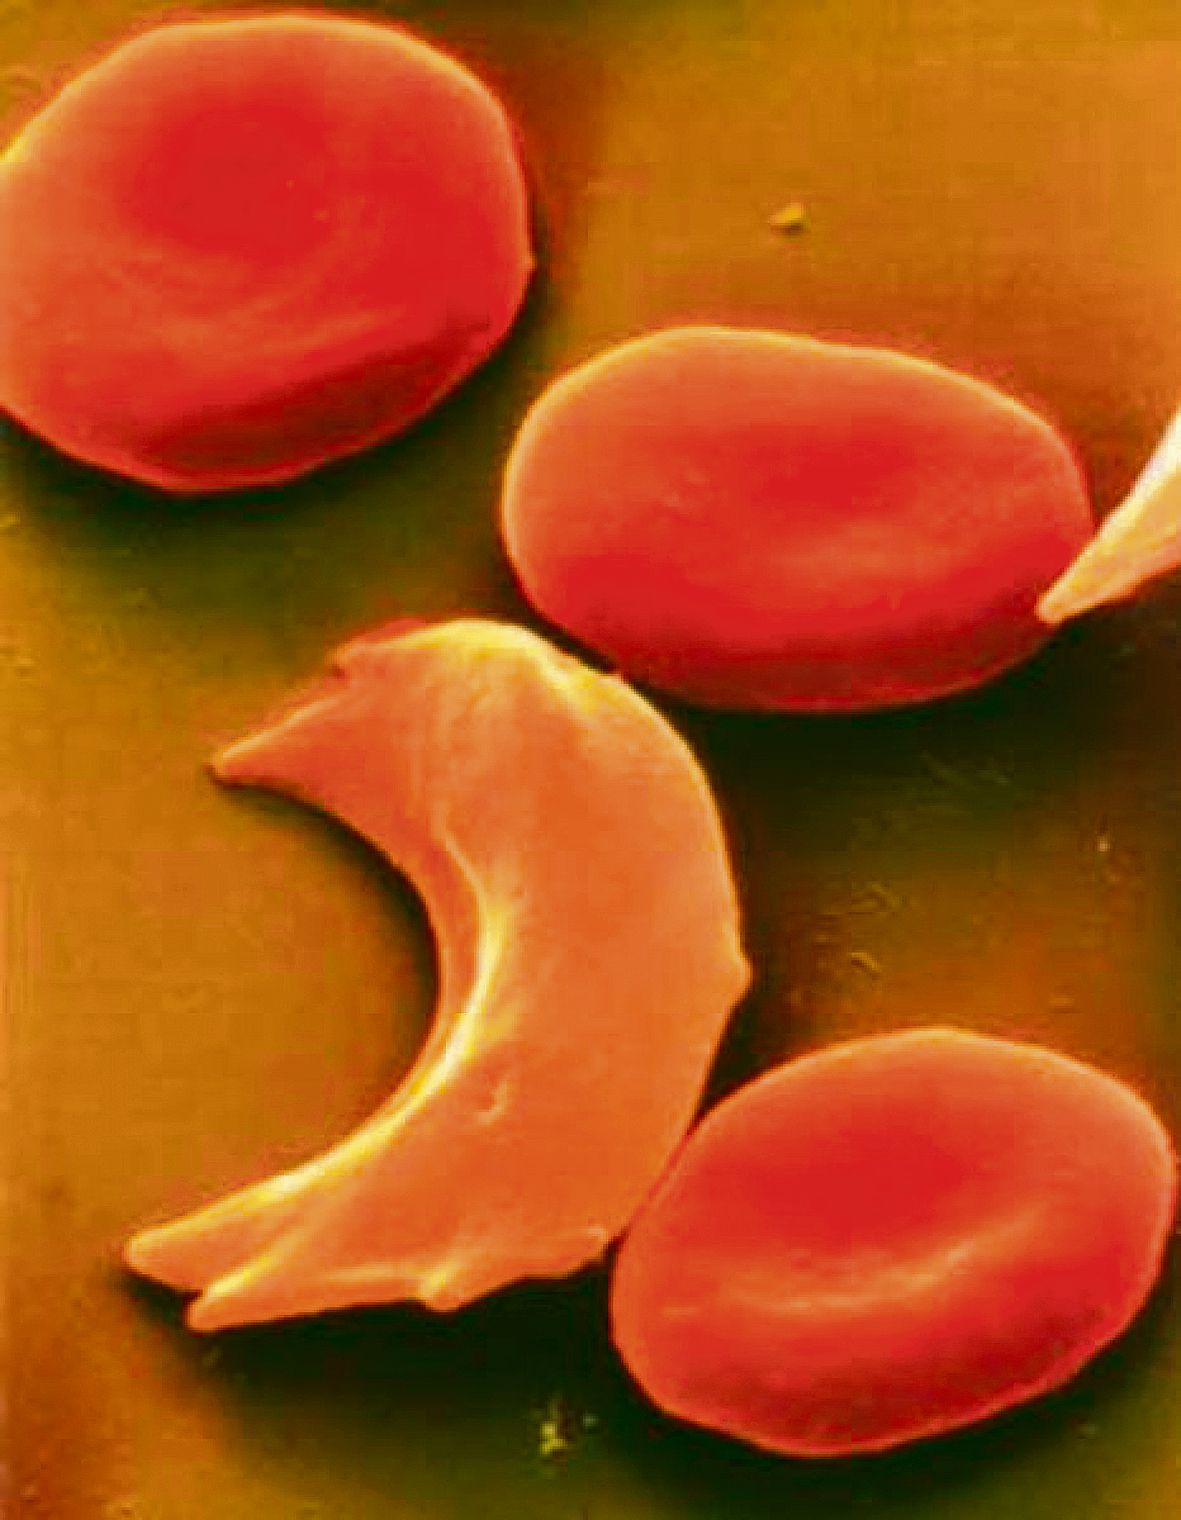 Ген серповидноклеточной анемии